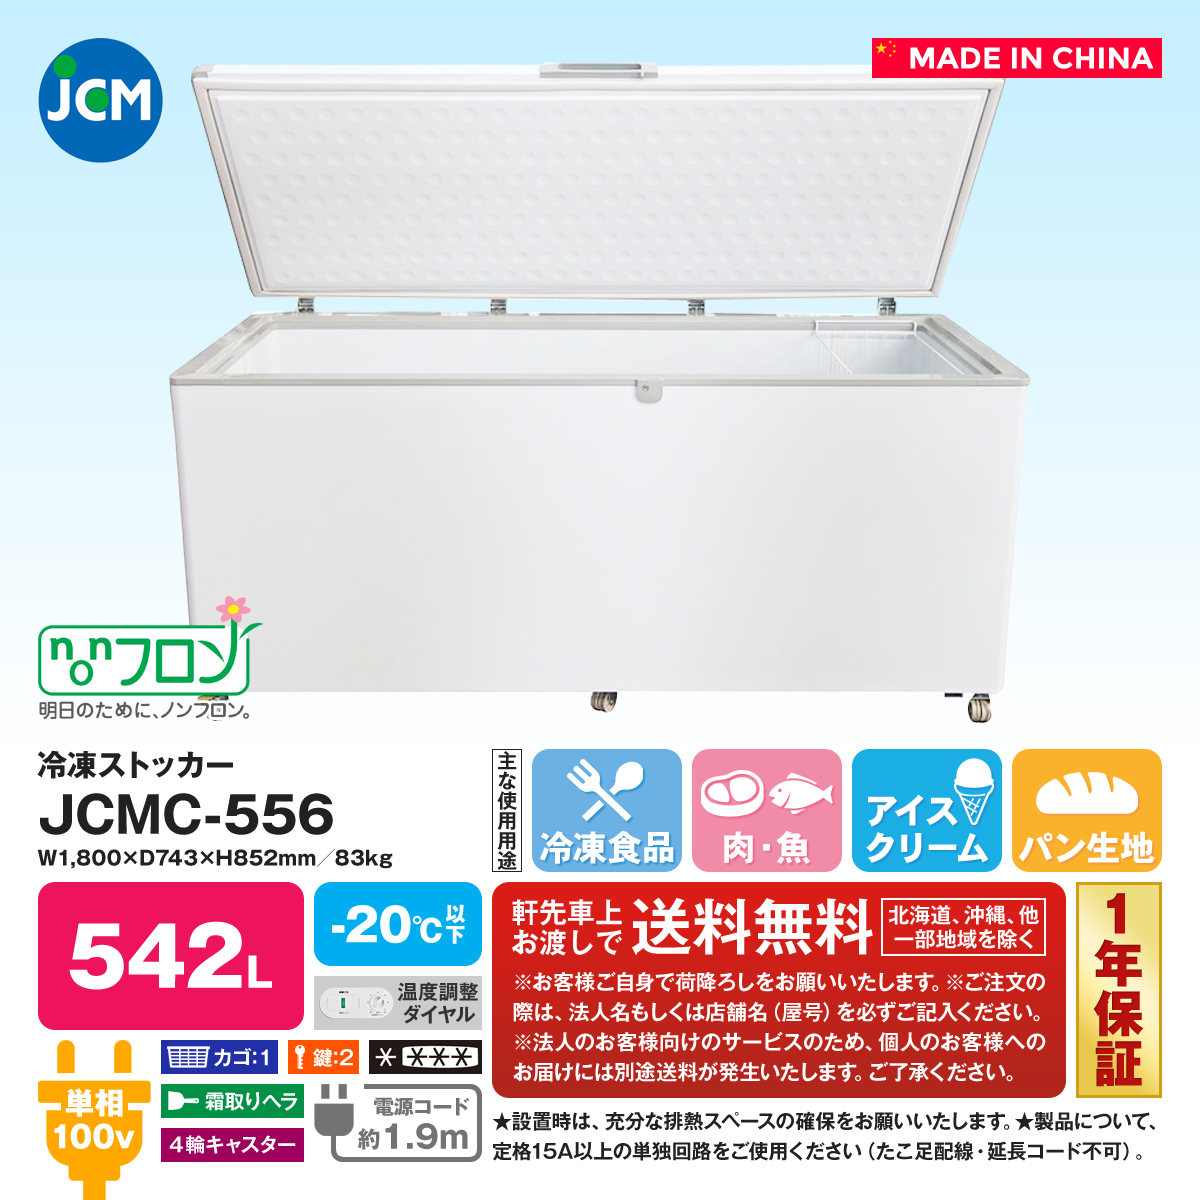 有限会社ユウキ / 冷凍ストッカー『JCMC-385』